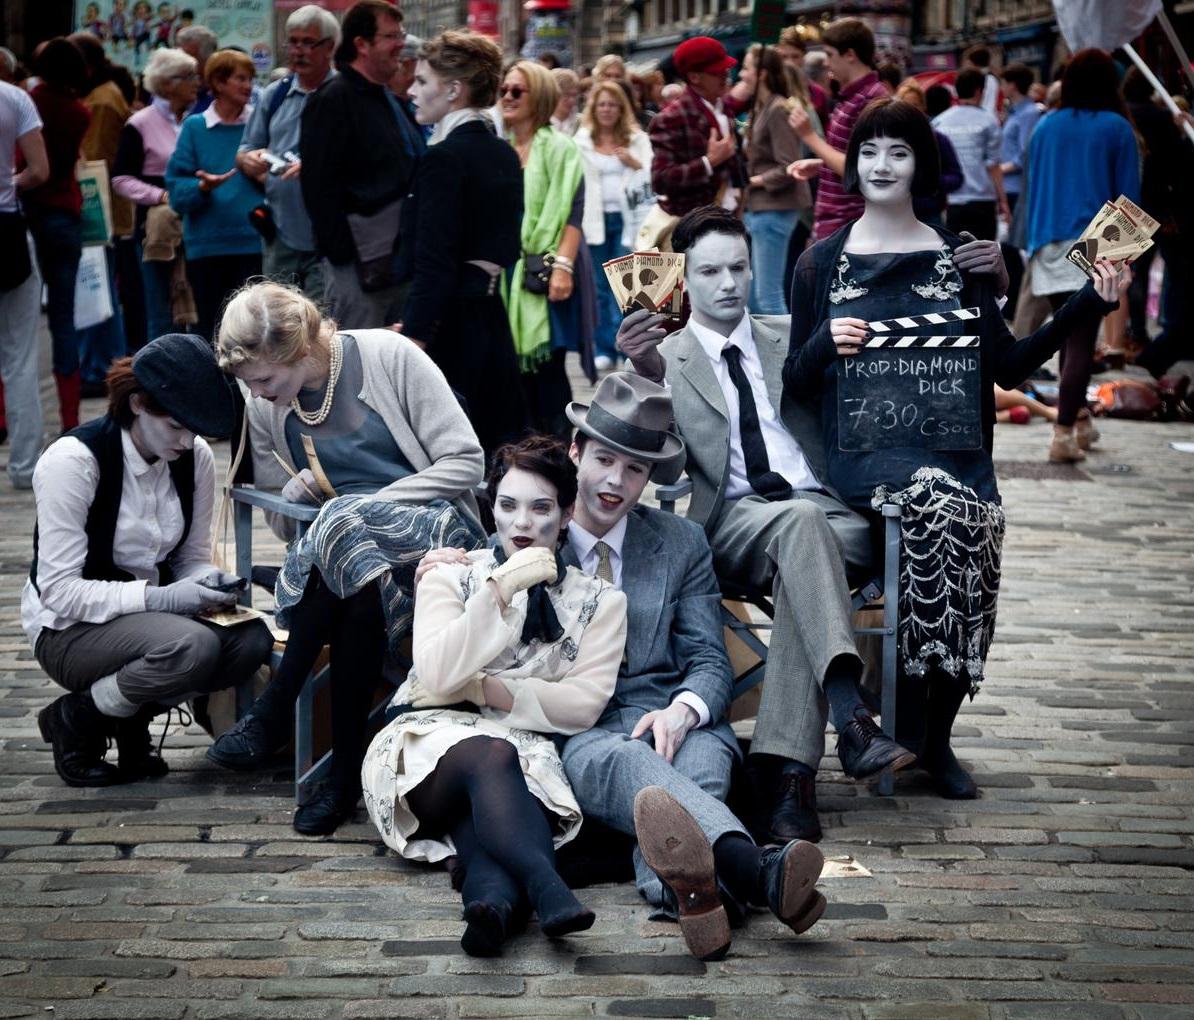 Street performers in Edinburgh.